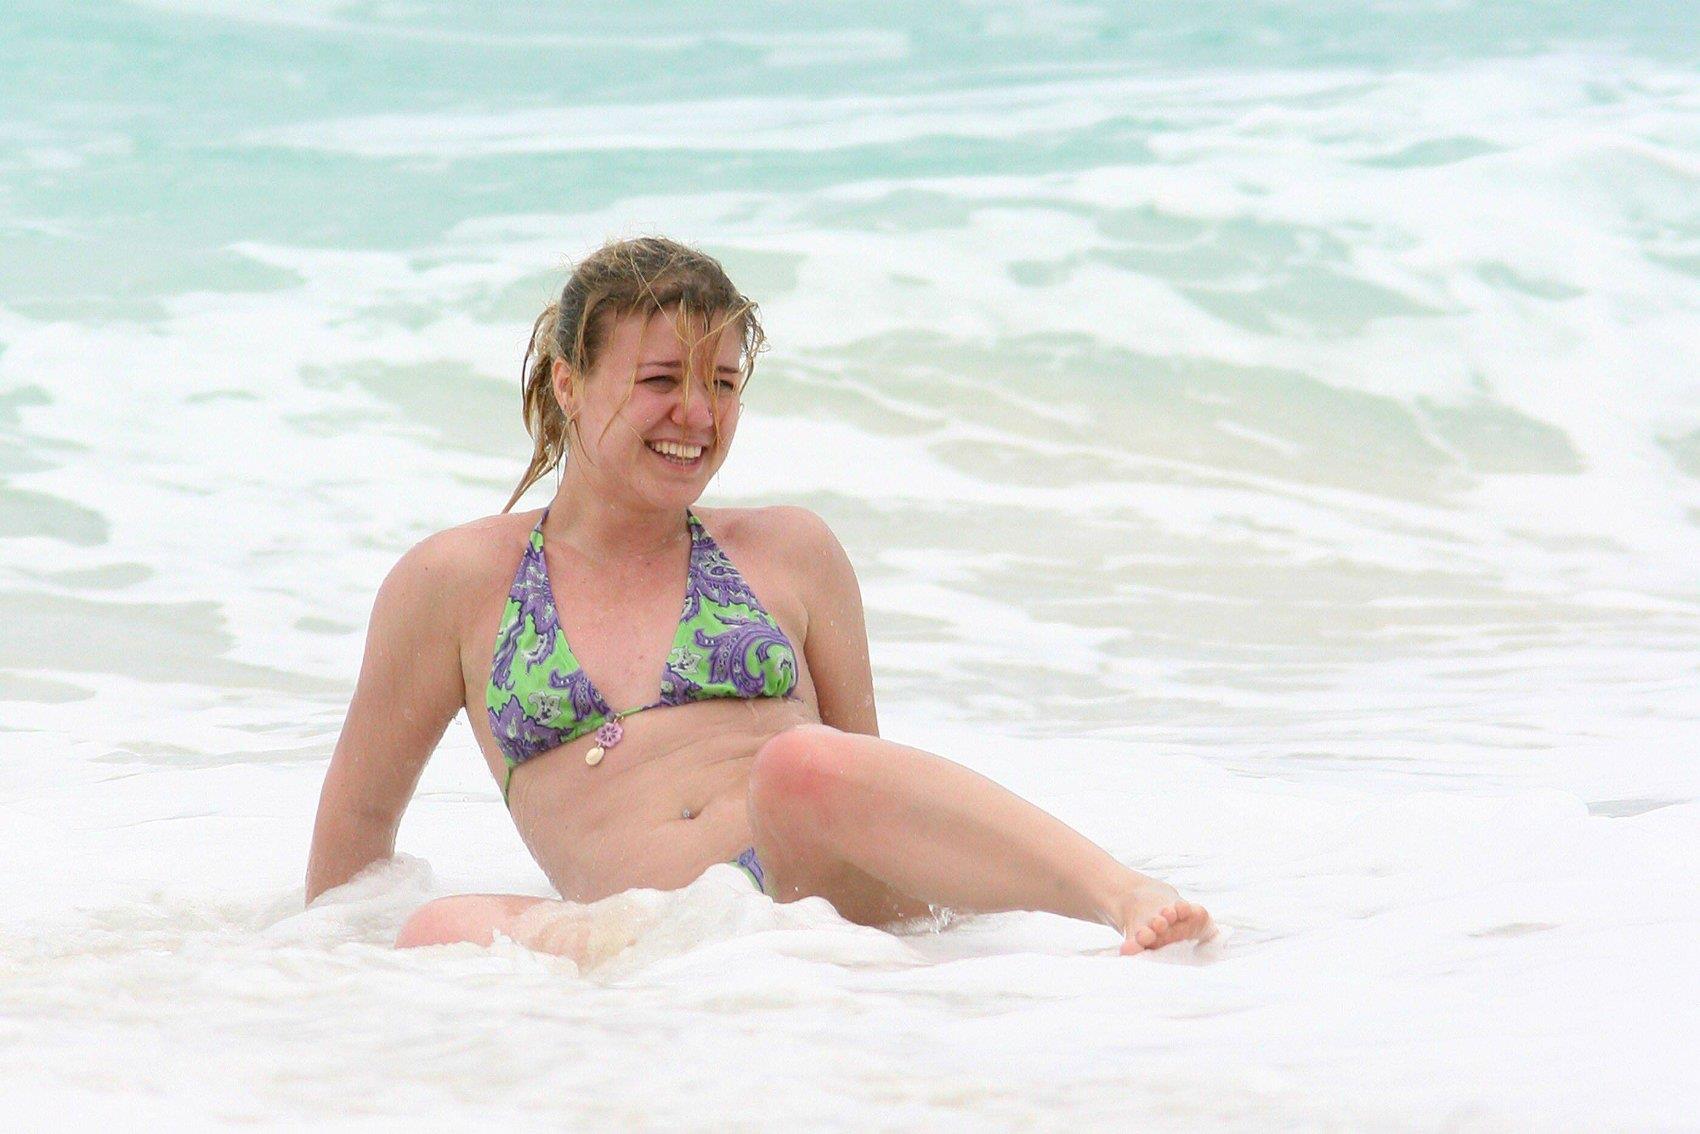 Kelly Clarkson Bikini Pictures. 